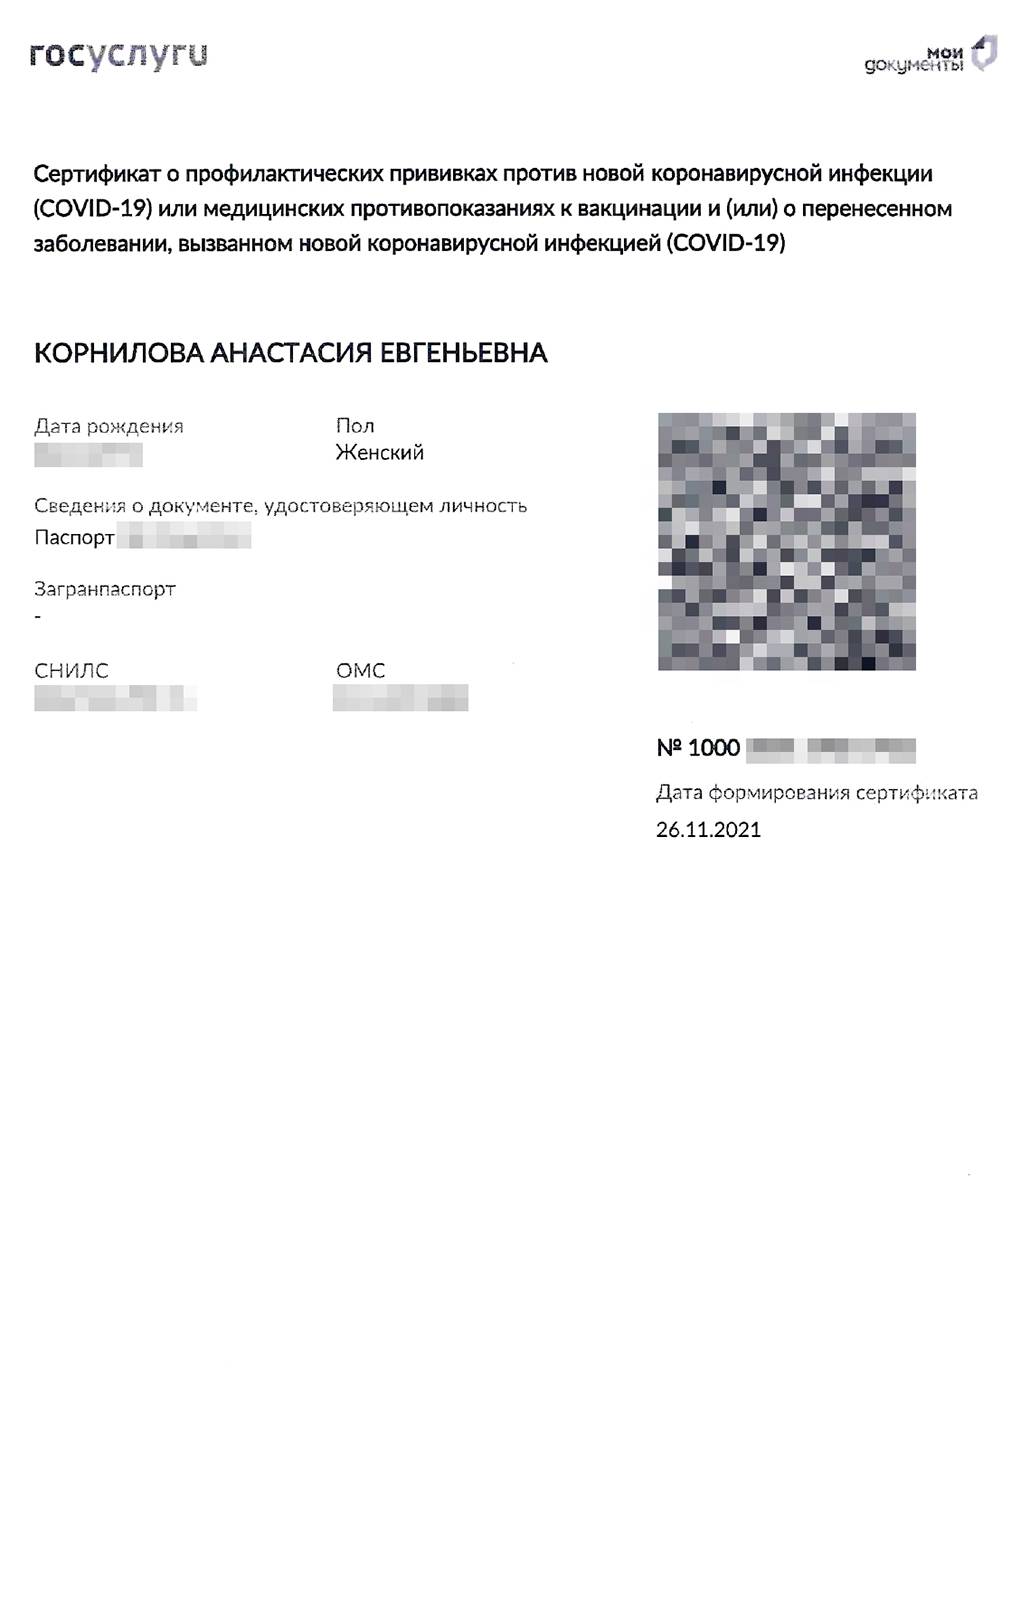 Сертификат о вакцинации от коронавируса на госуслугах как выглядит на госуслуги